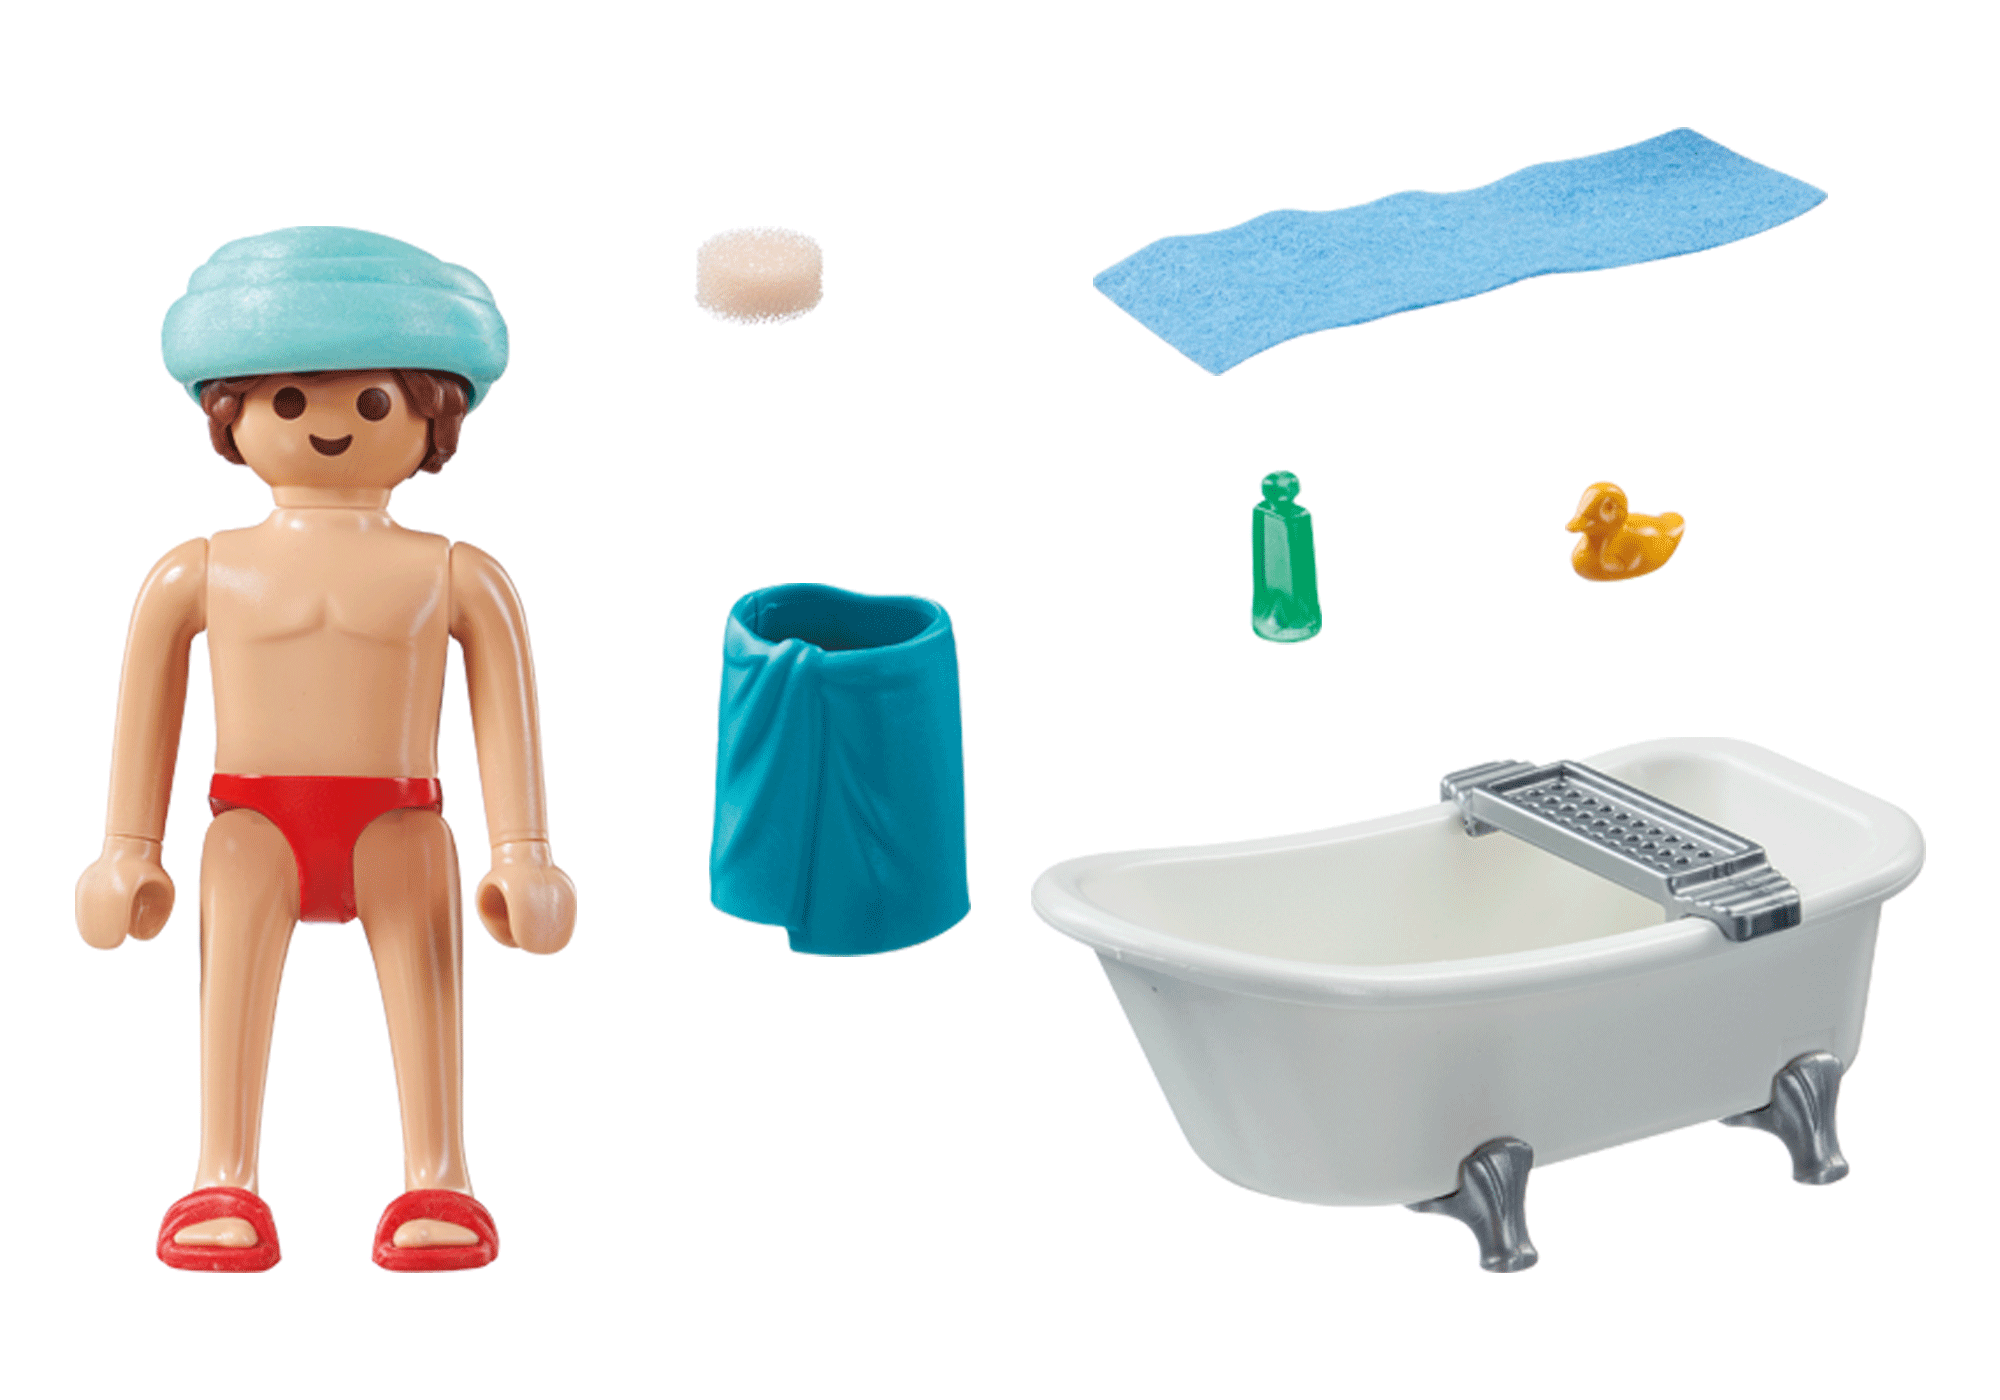 71167 - Playmobil Spécial Plus - Homme et baignoire Playmobil : King Jouet, Playmobil  Playmobil - Jeux d'imitation & Mondes imaginaires